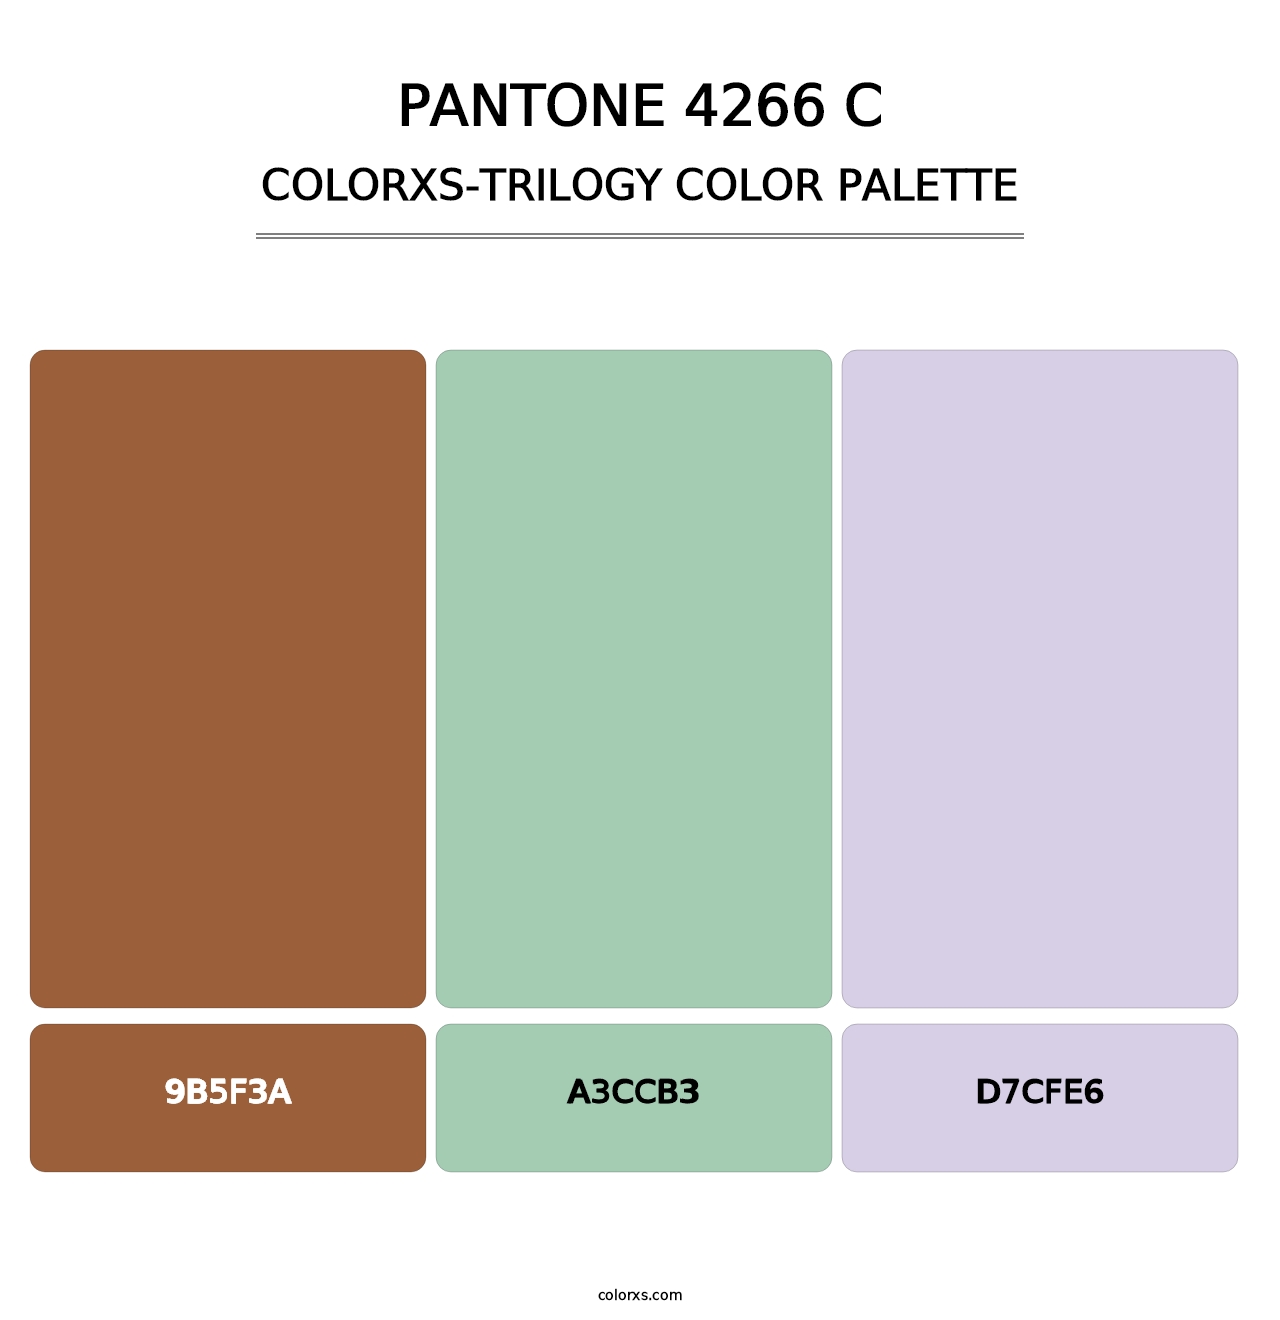 PANTONE 4266 C - Colorxs Trilogy Palette